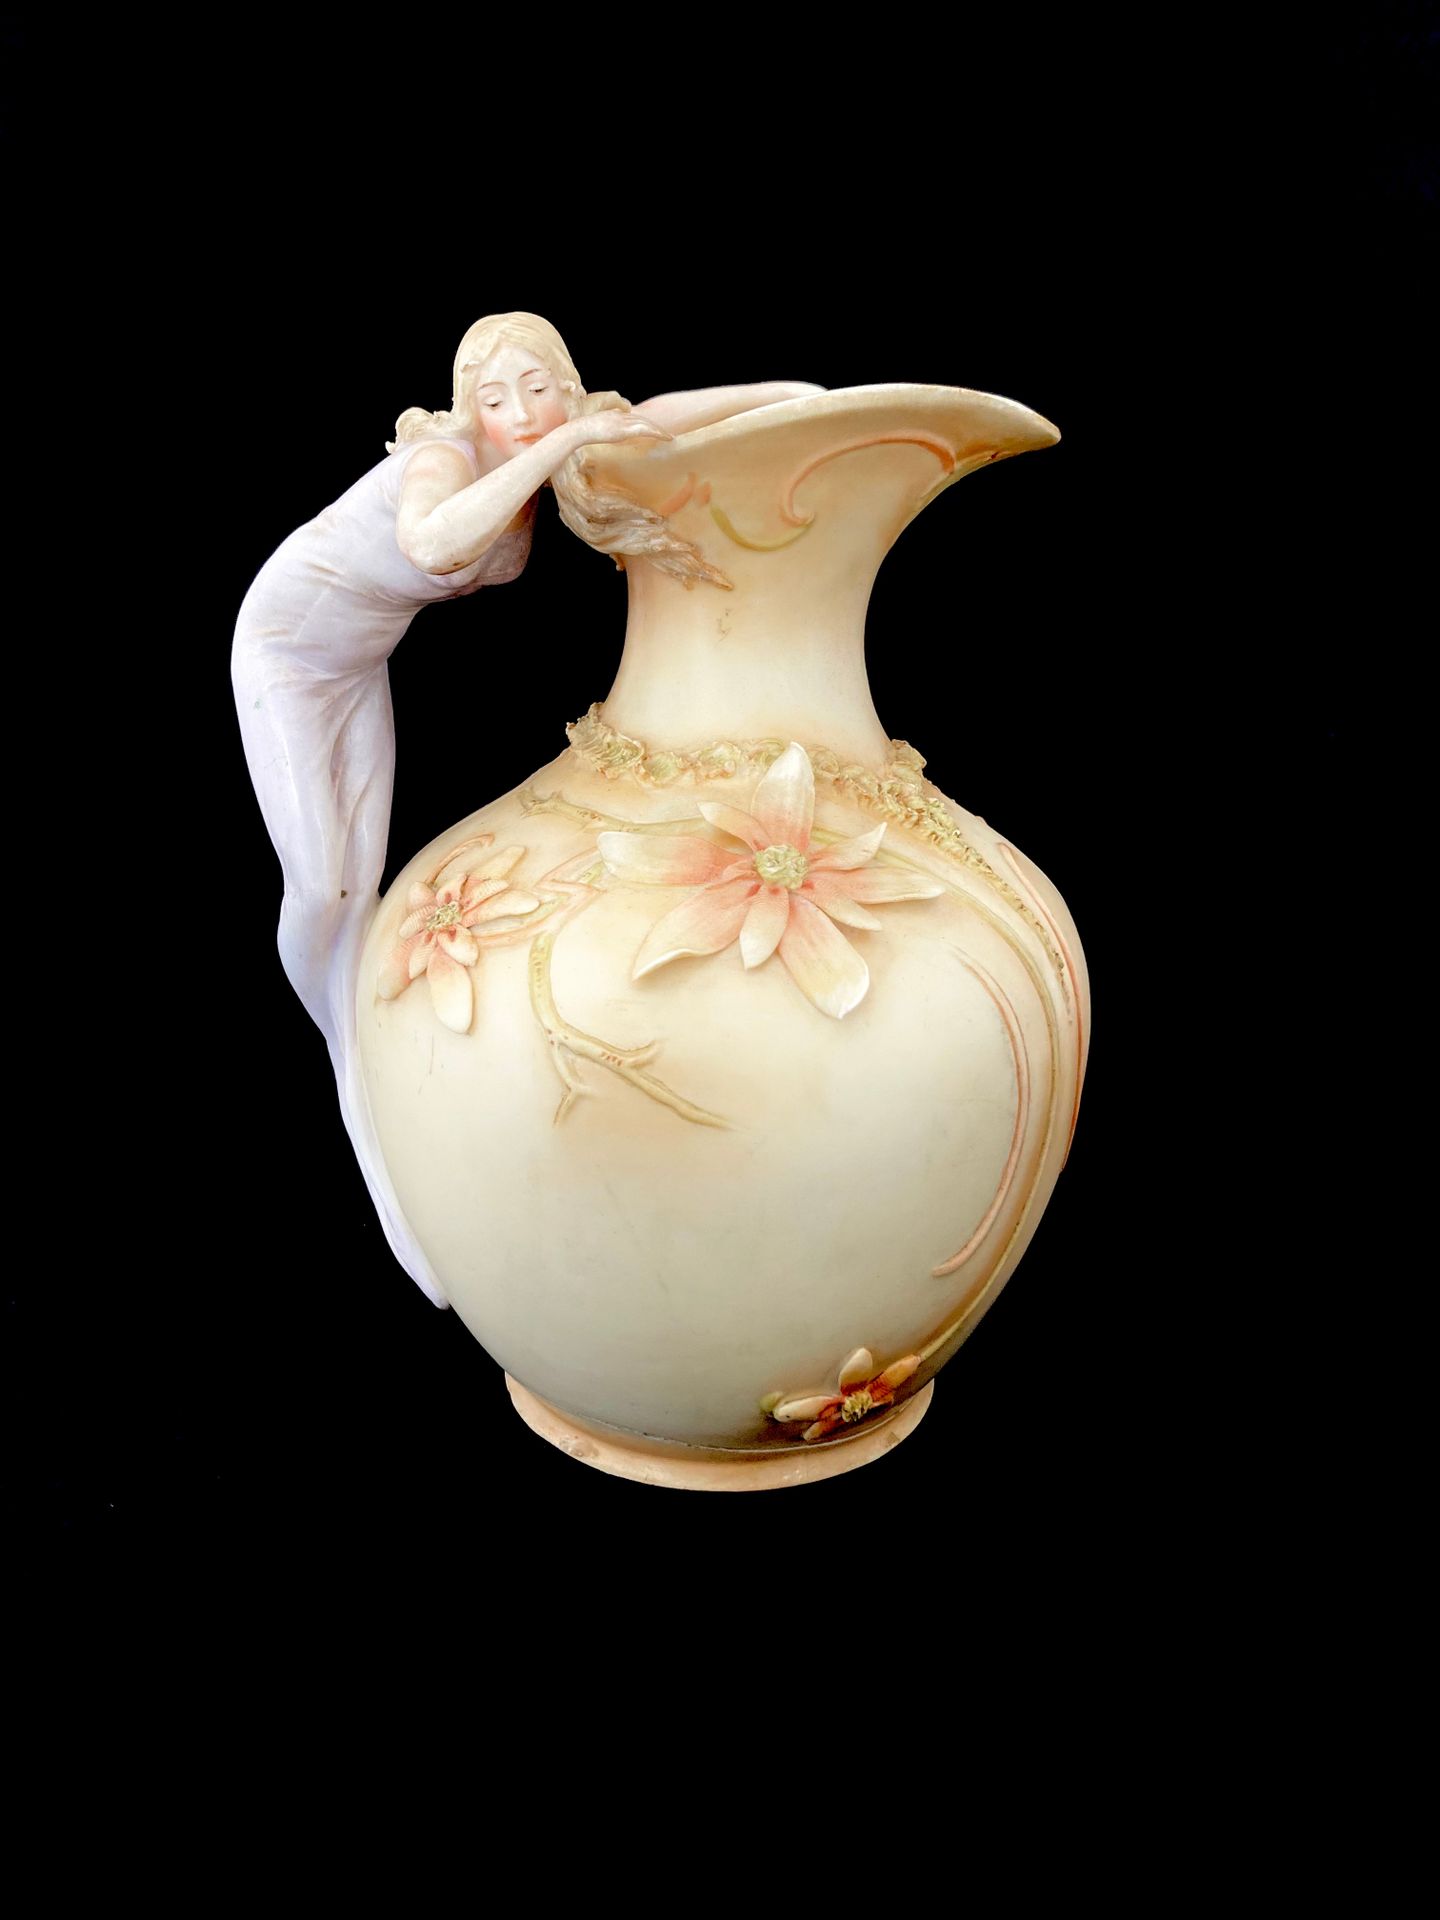 Null 在波西米亚皇家杜克的味道中

 新艺术风格的花瓶，有花卉装饰，拟人化的手柄。

高20厘米。宽度为17厘米。

背面有铭文。

底座损坏后被粘回。